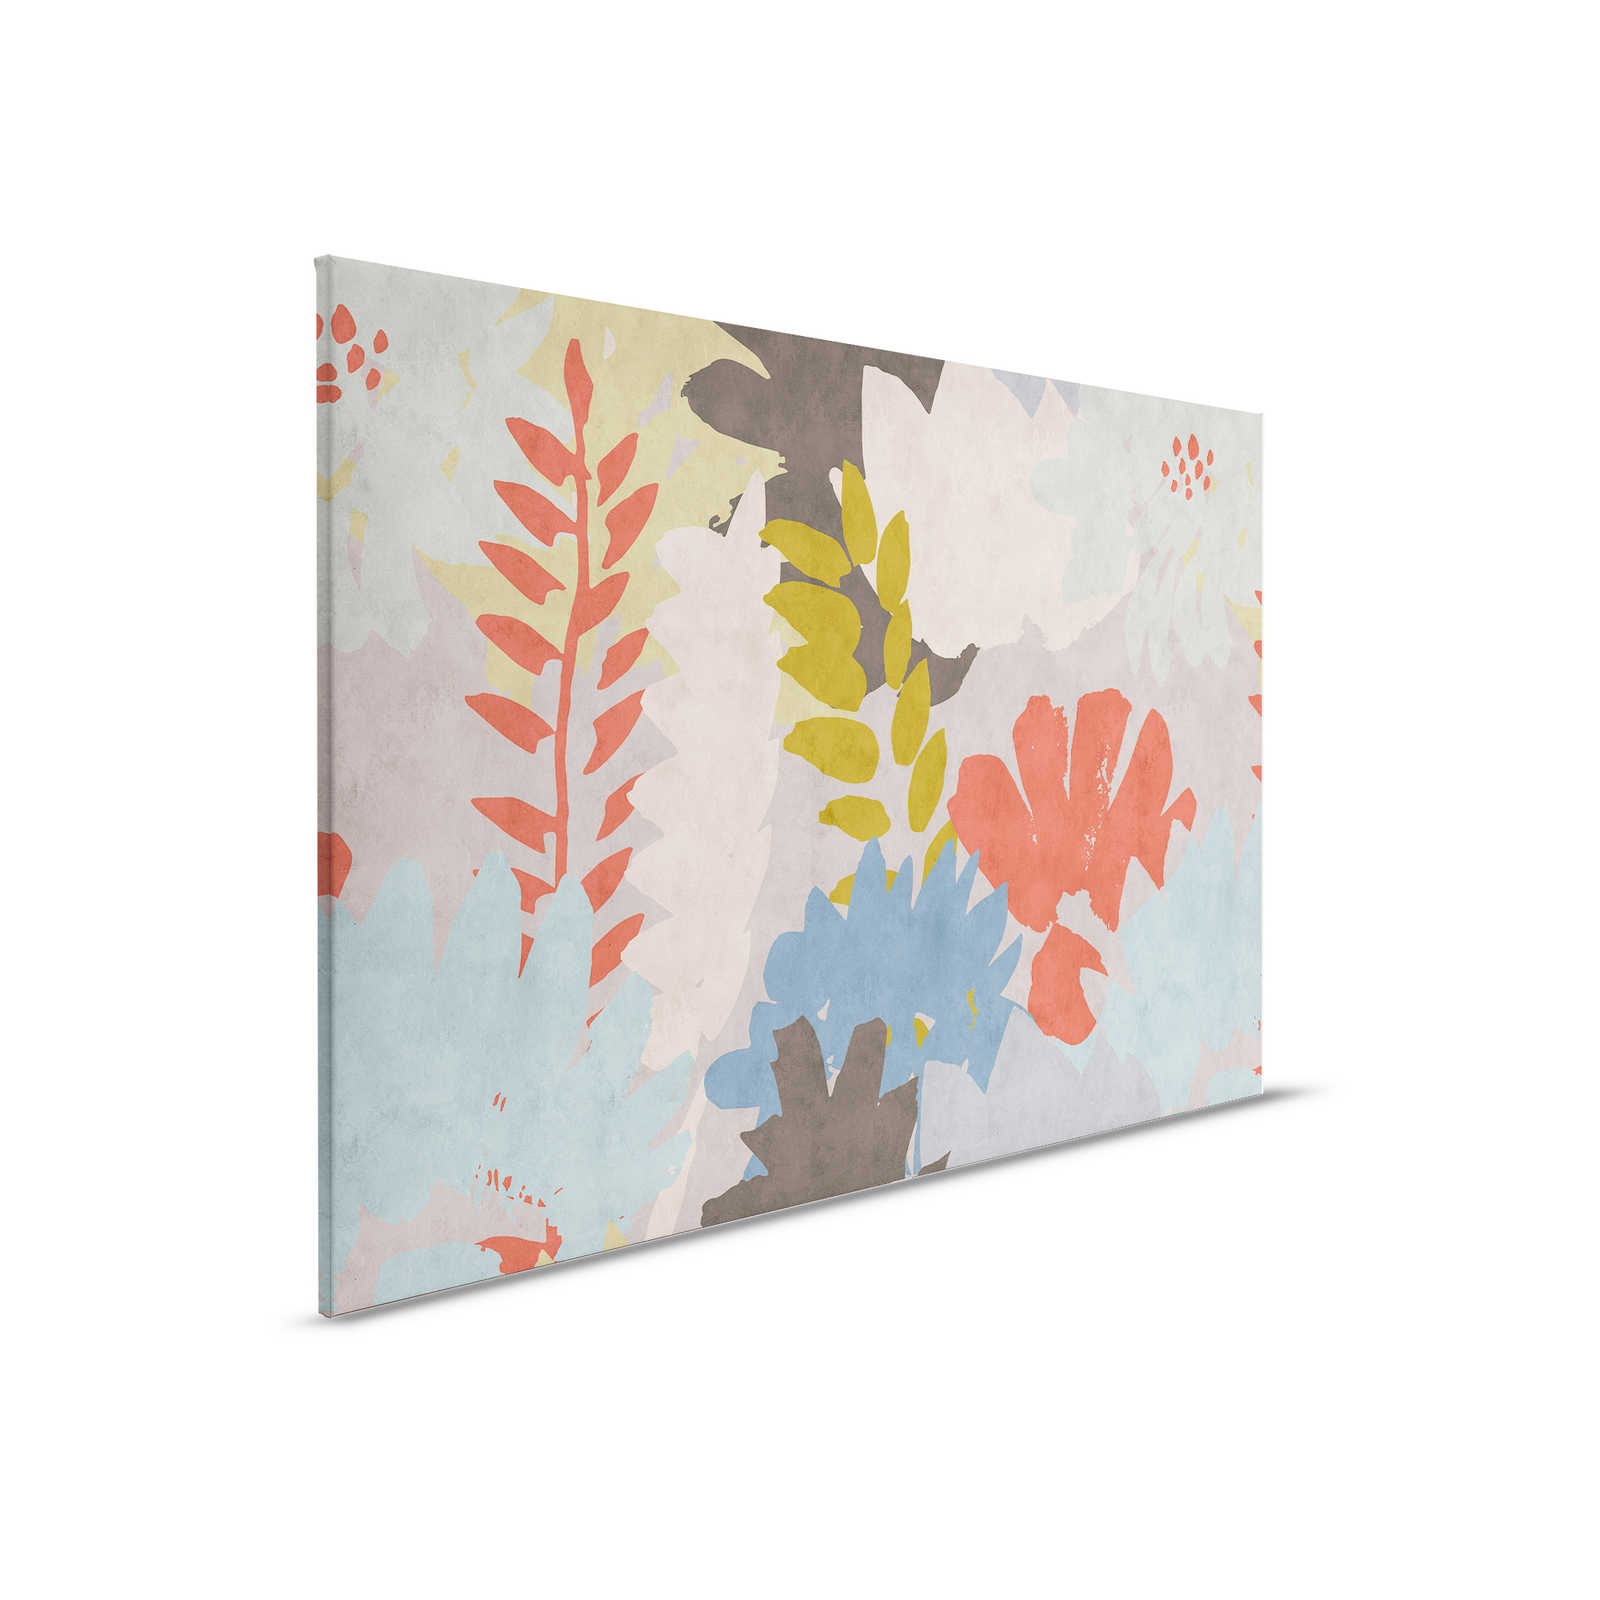         Floral Collage 3 - Abstraktes Leinwandbild in Löschpapier Struktur mit Blätter-Motiv – 0,90 m x 0,60 m
    